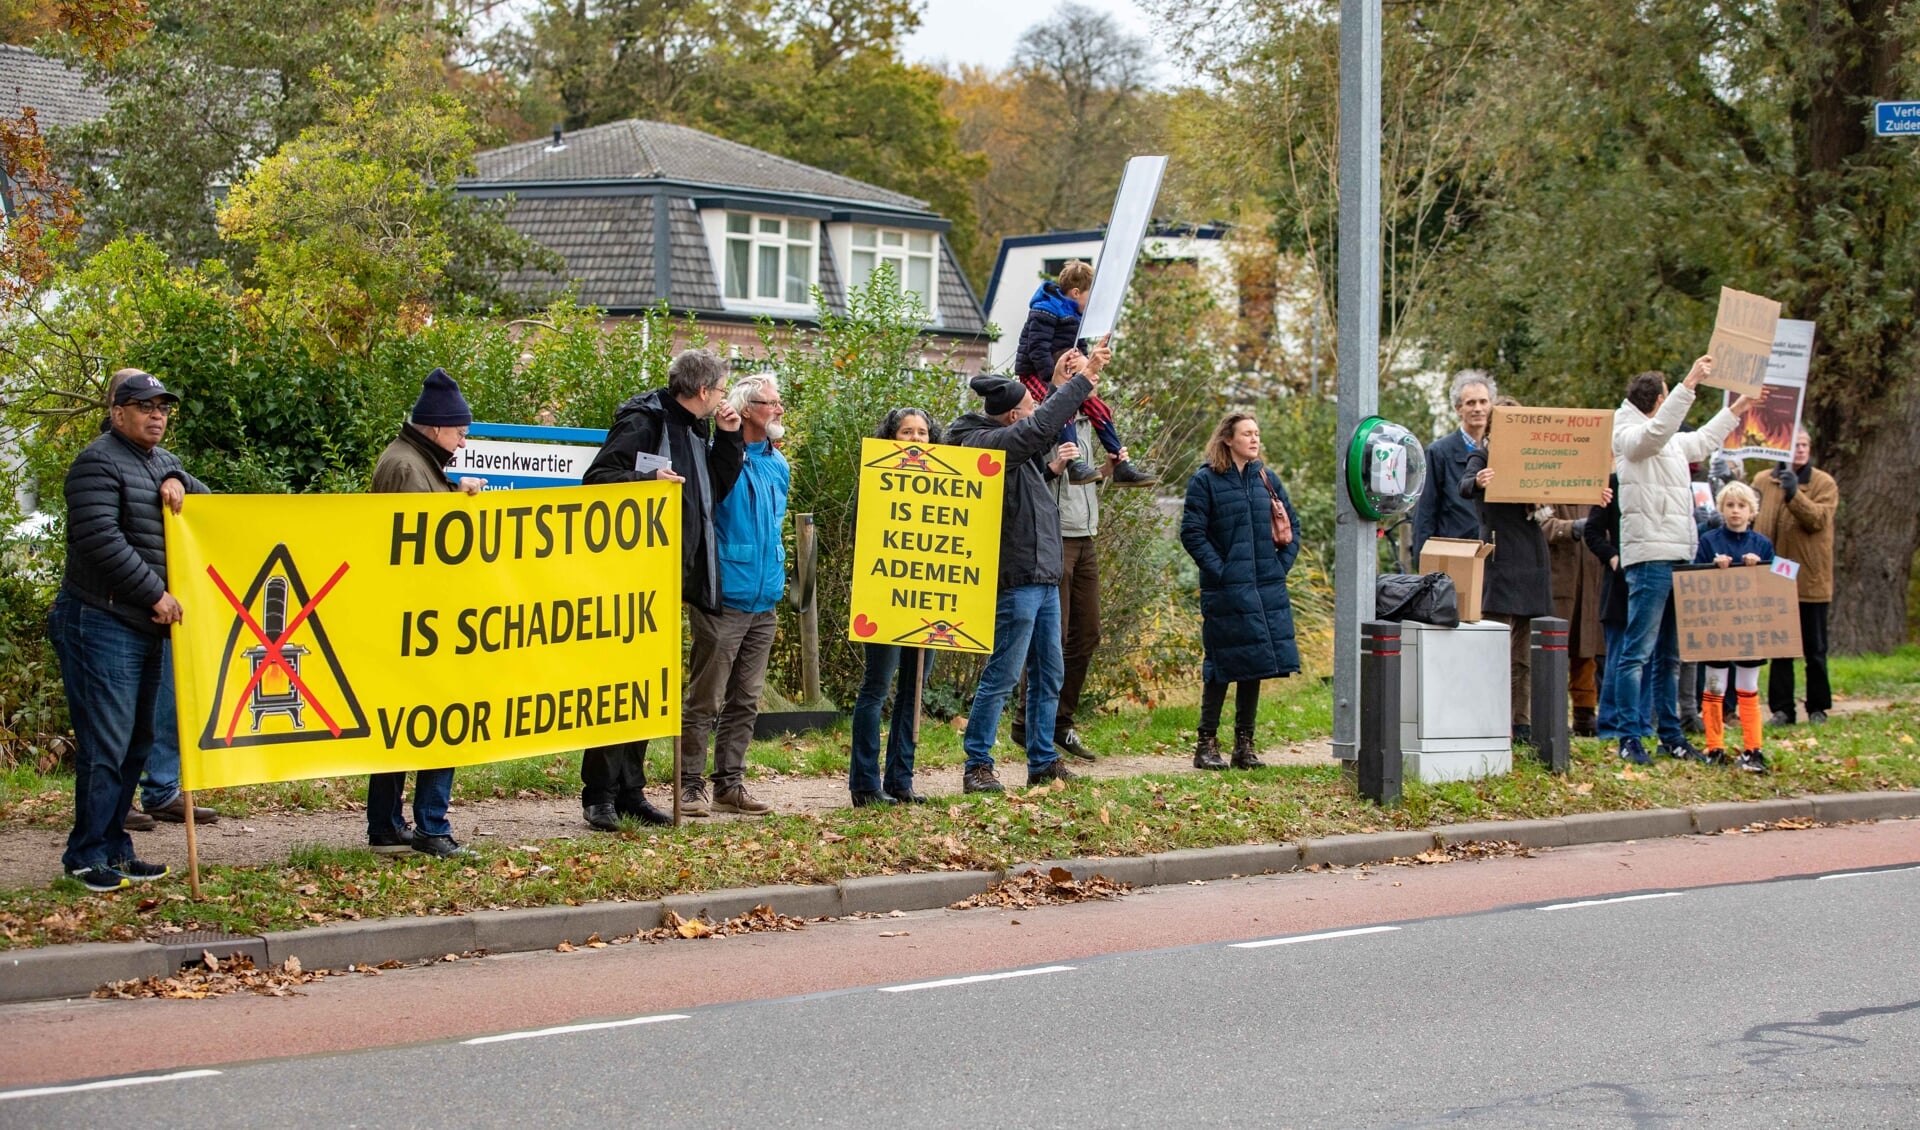 Eind vorig jaar was er nog een betoging in Hilversum tegen hout stoken. 